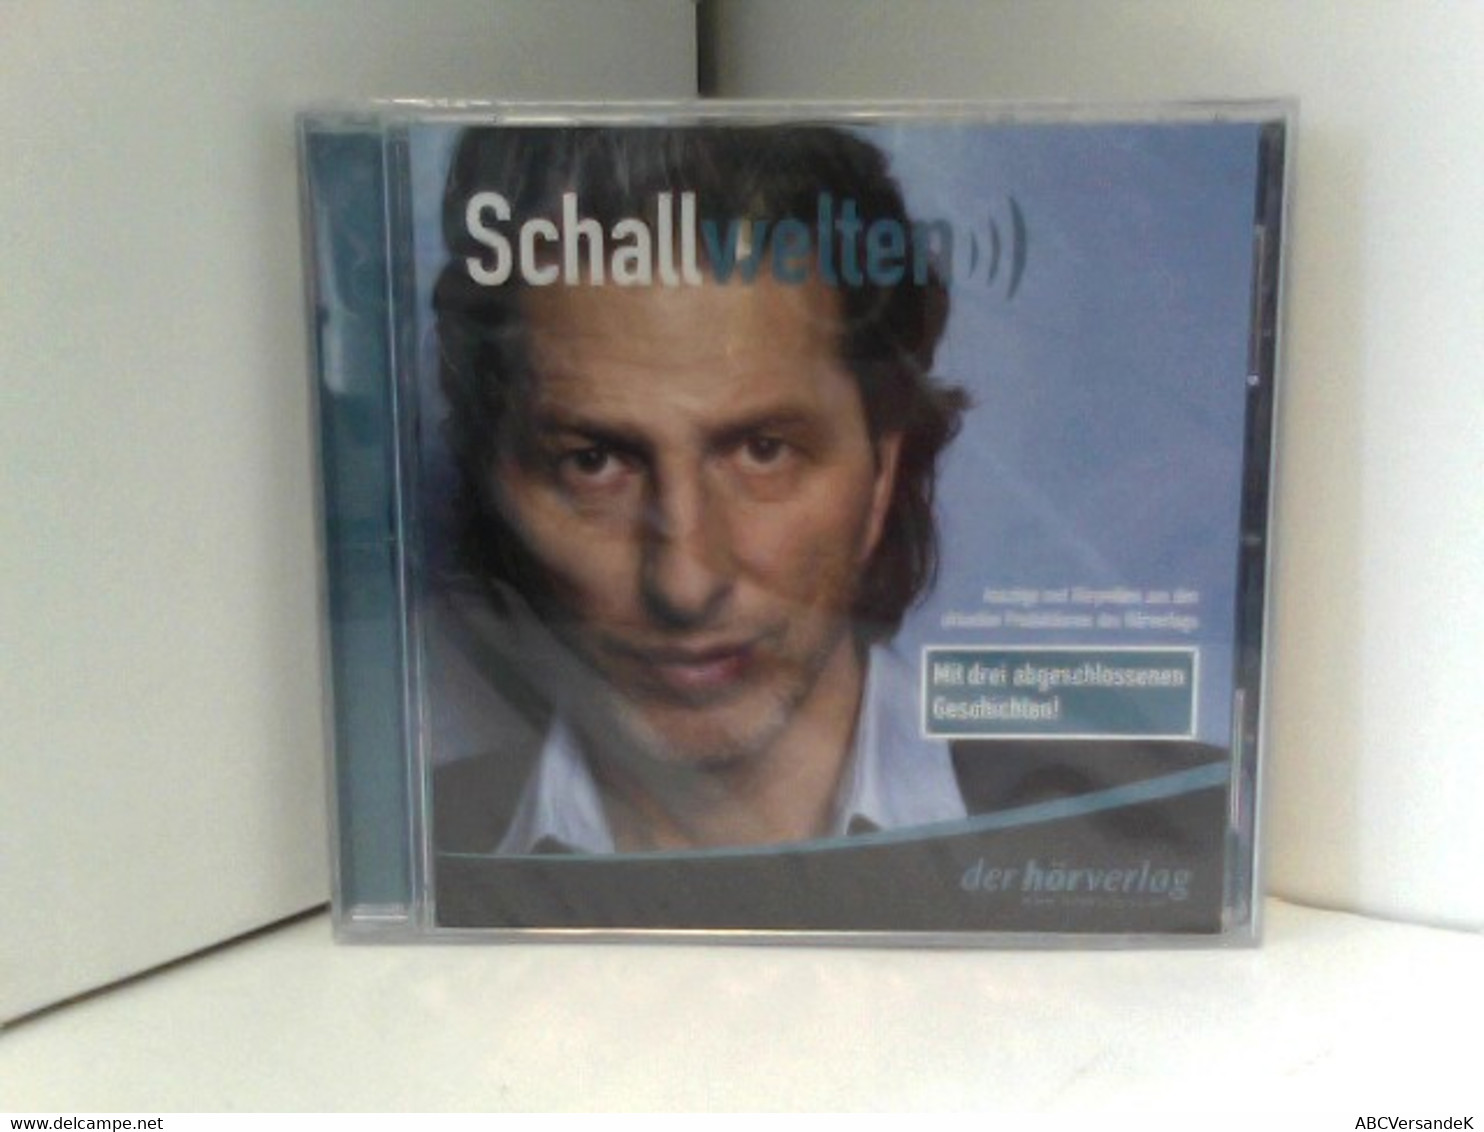 Schallwelten - Auszüge Und Hörproben Aus Den Aktuellen Produktionen Des Hörverlags - Mit Drei Abgeschlossenen - CDs